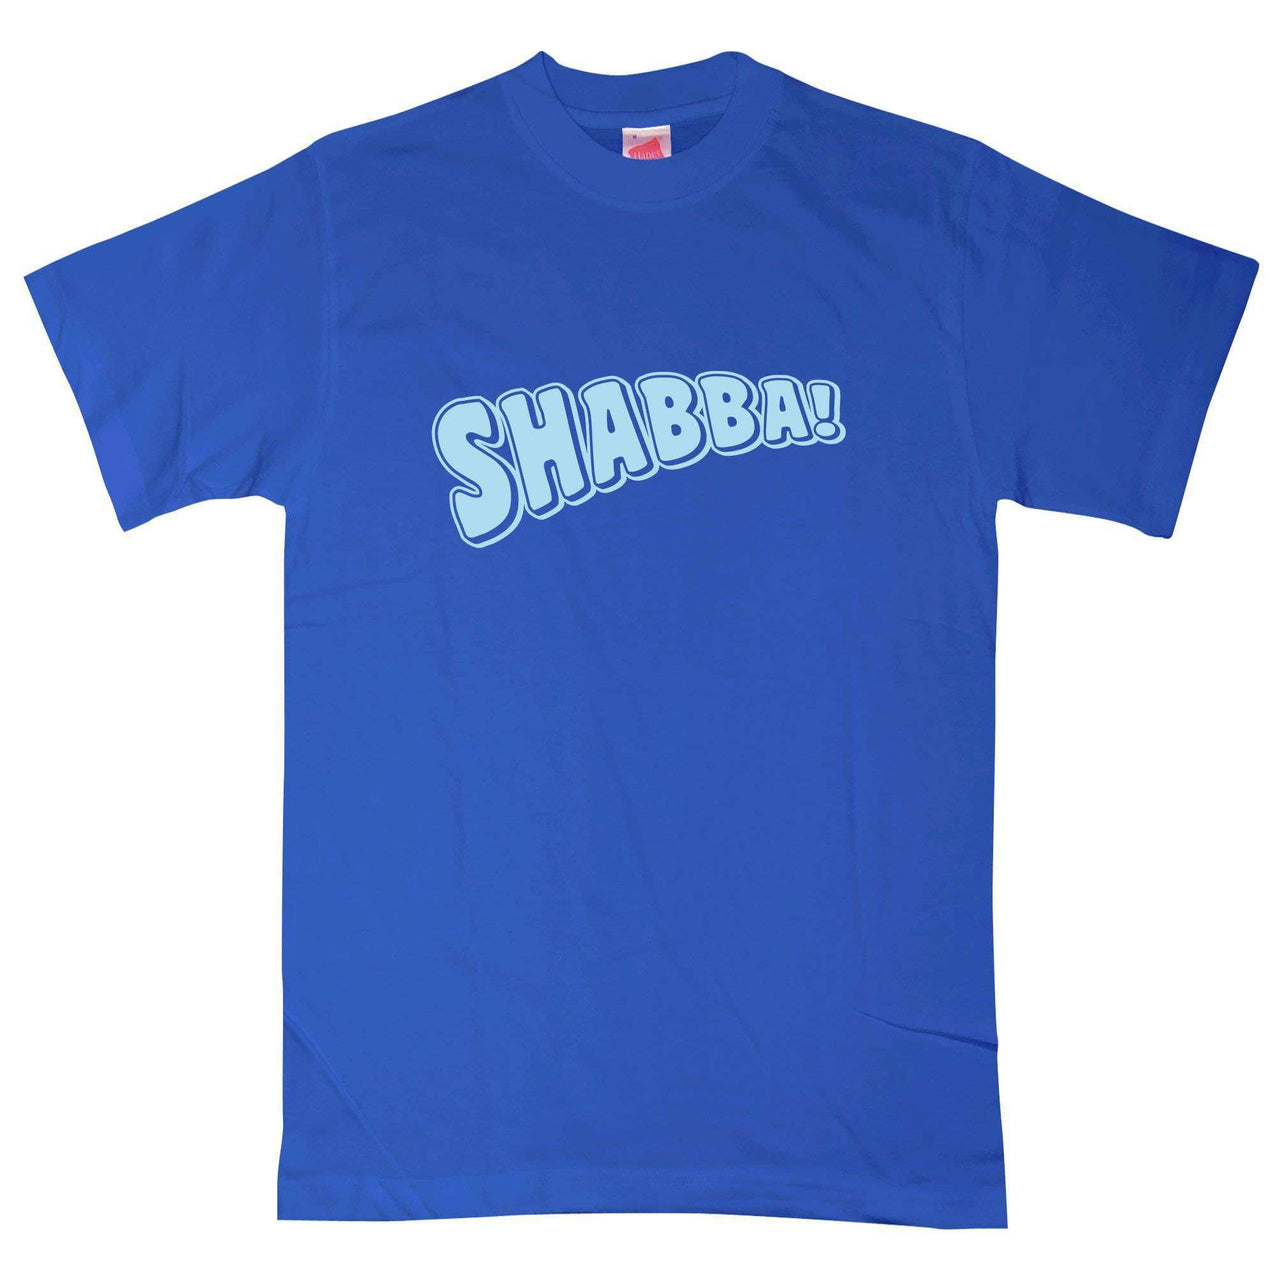 Shabba T-Shirt For Men 8Ball